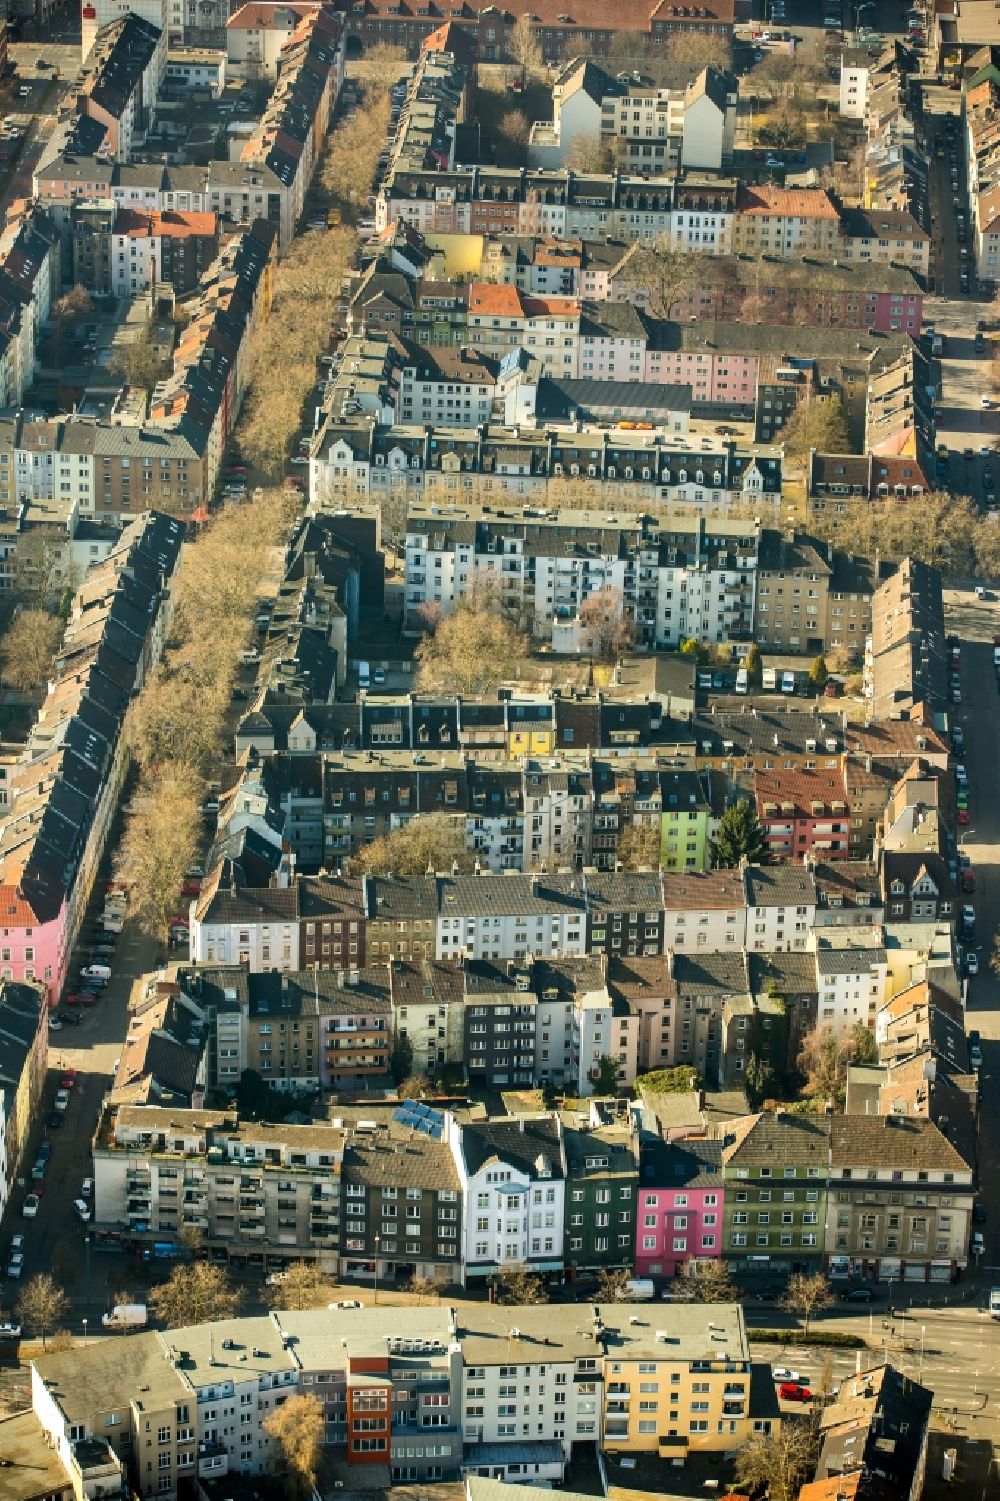 Dortmund von oben - Wohngebiet der Mehrfamilienhaussiedlungen im Ortsteil Nordmarkt-Süd in Dortmund im Bundesland Nordrhein-Westfalen, Deutschland